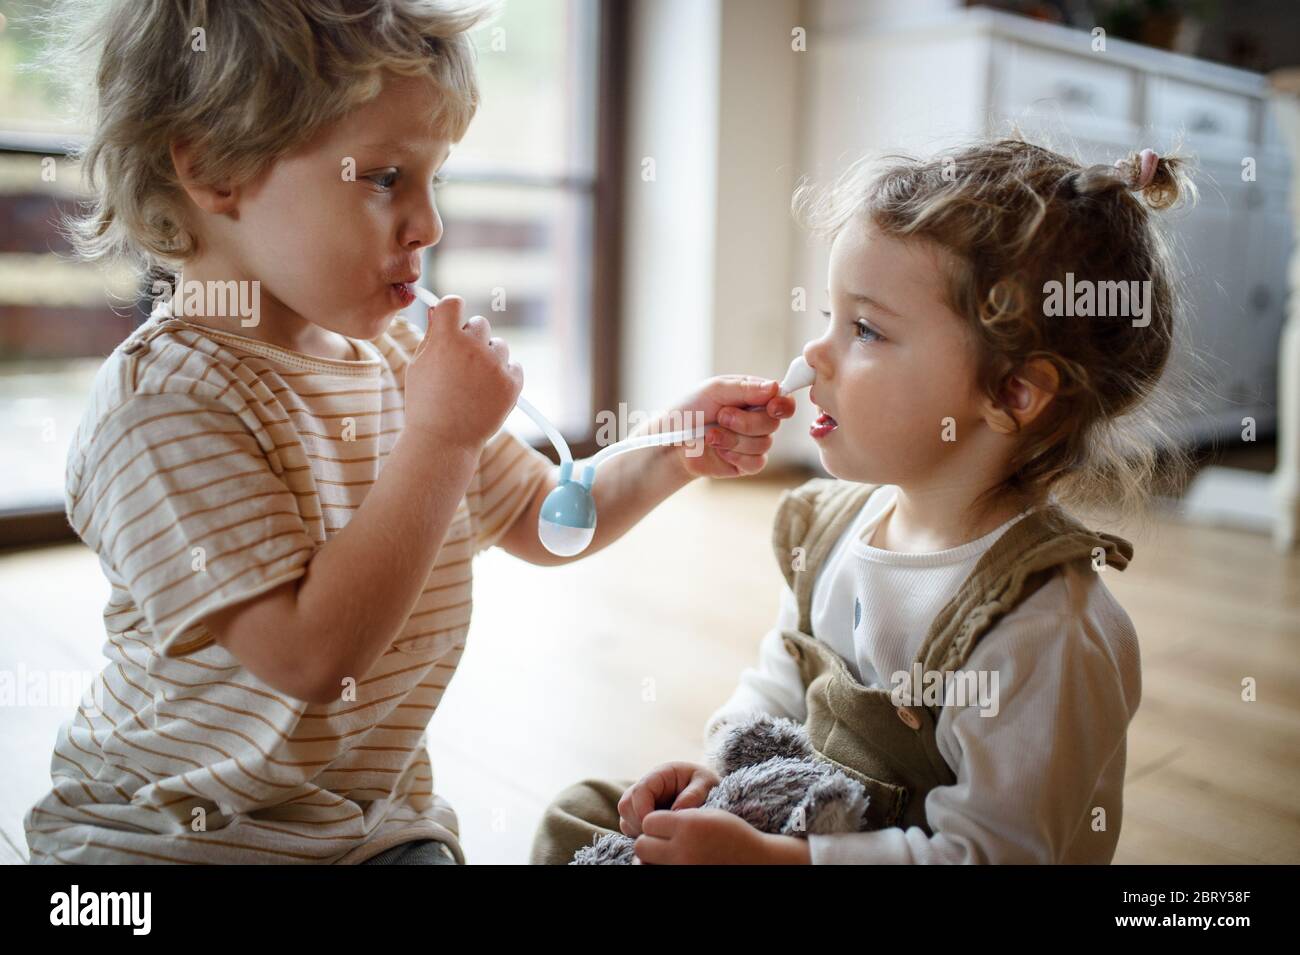 Zwei kleine Kinder, Bruder und Schwester zu Hause, spielen mit Nasal-Aspirator. Stockfoto